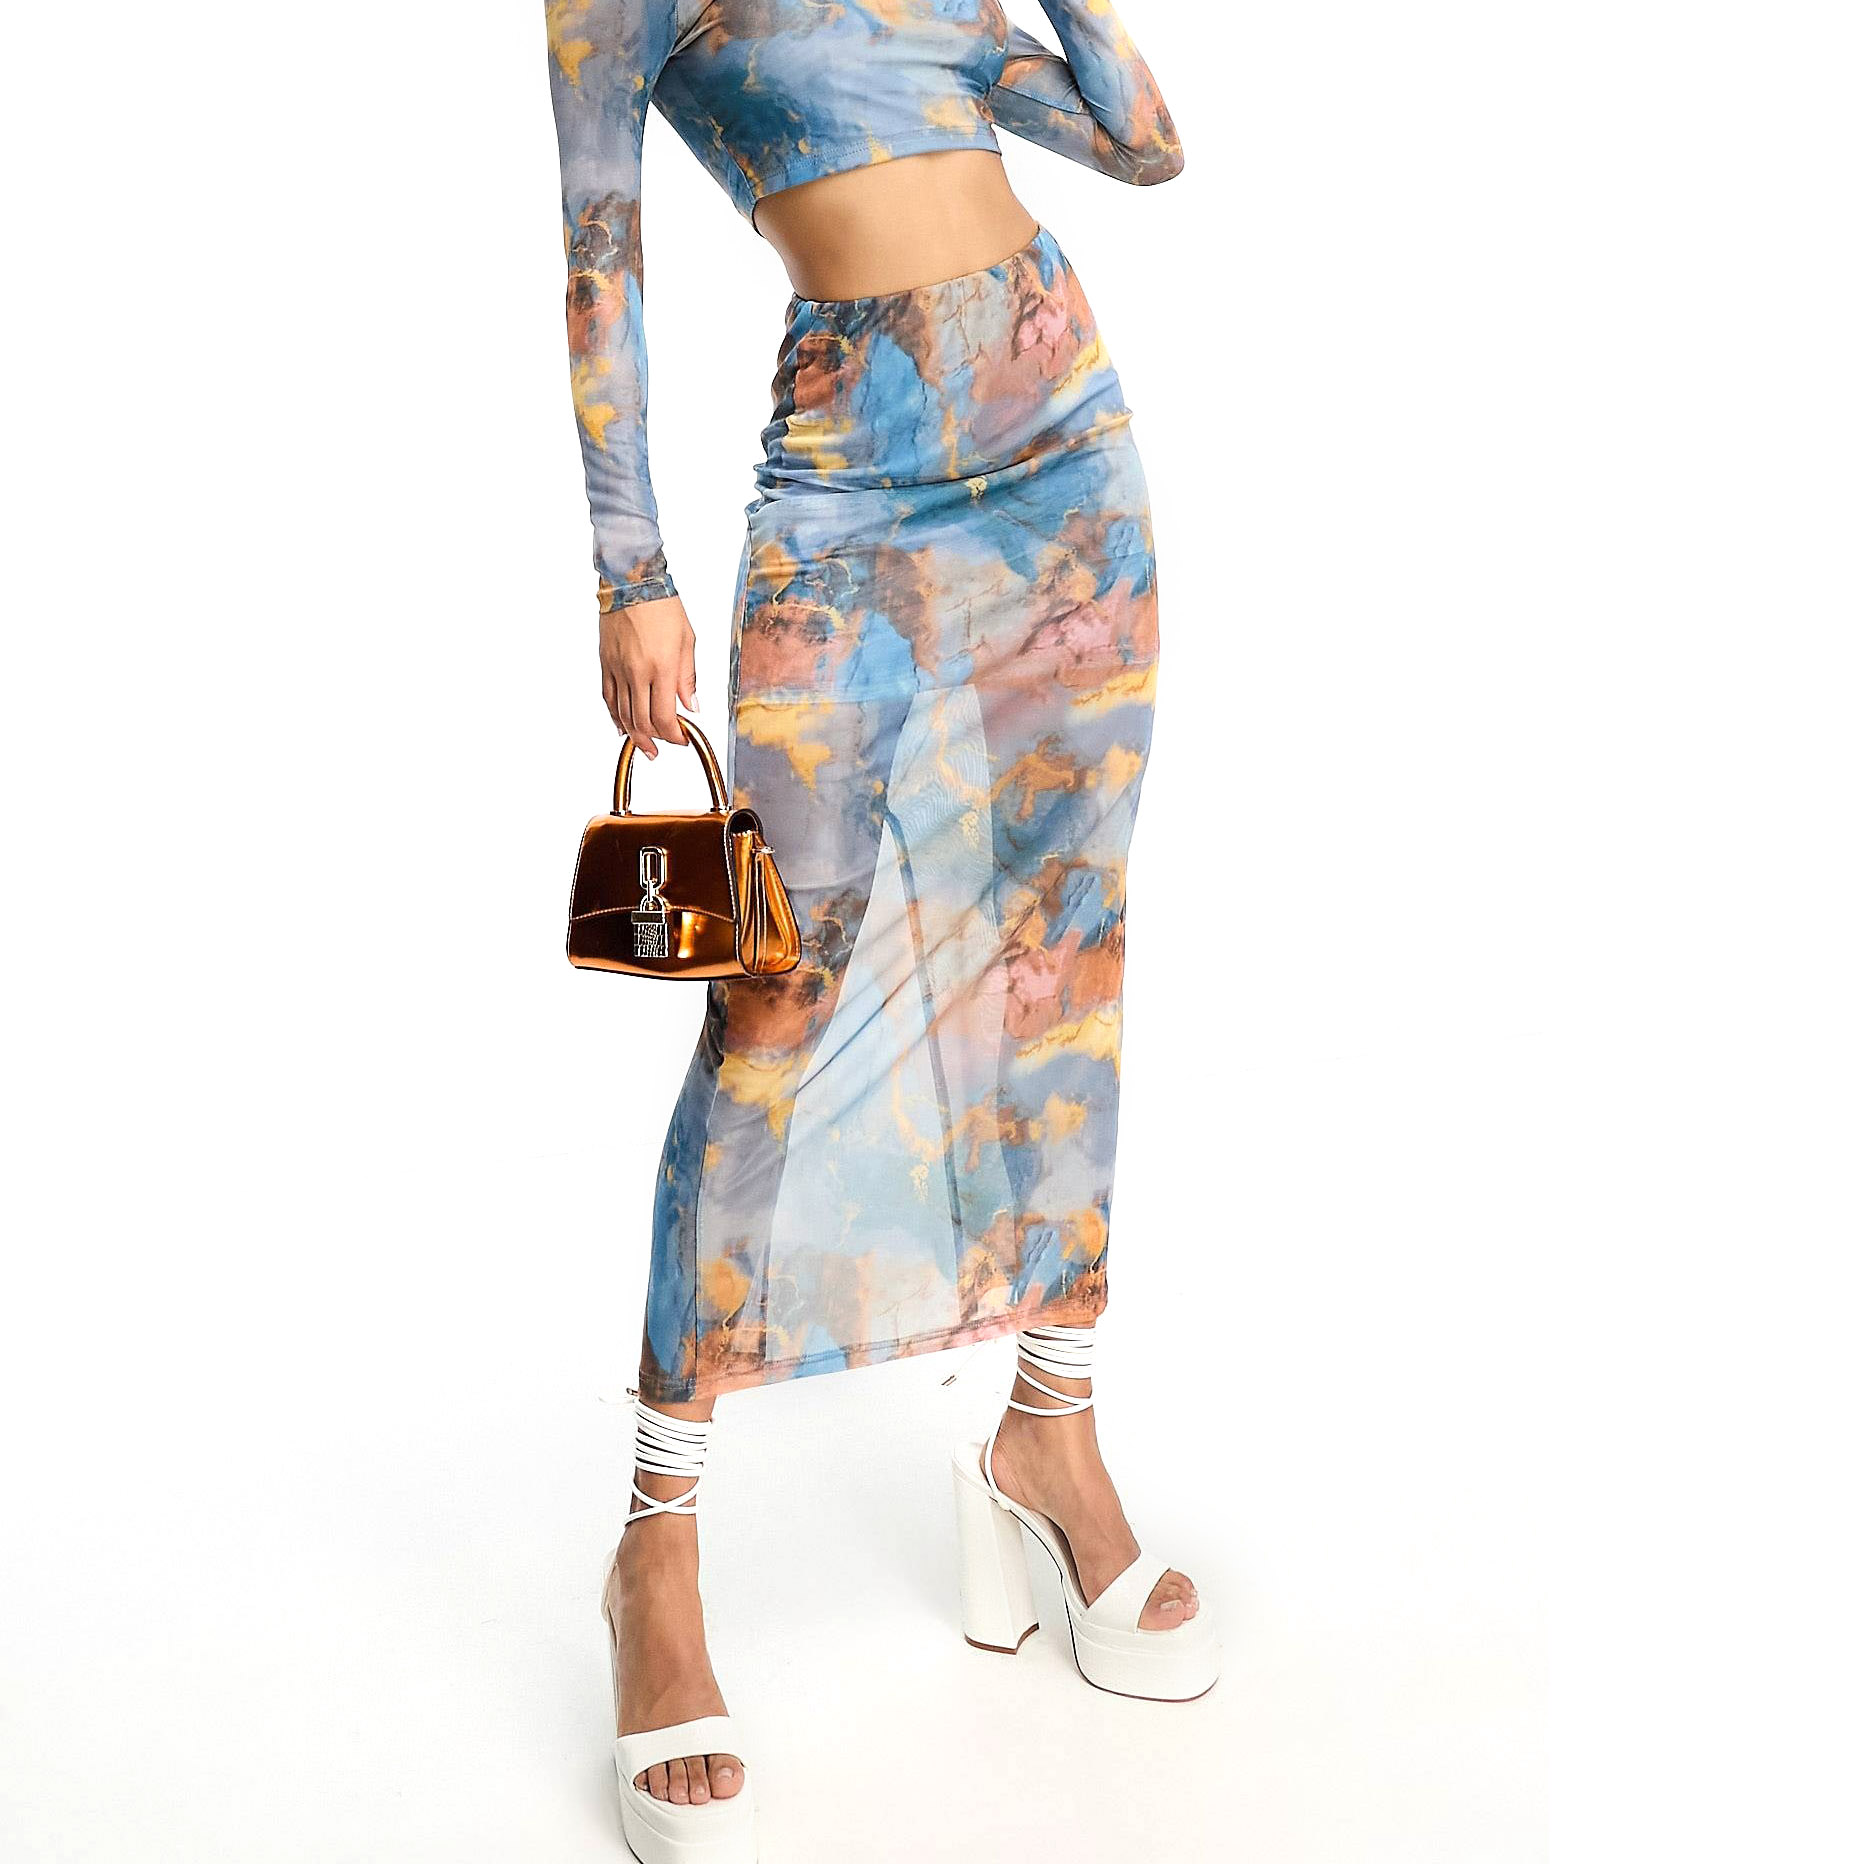 Юбка In The Style Mesh Column Maxi, голубой/мультиколор женская юбка 2022 модная бежевая комбинированная юбка